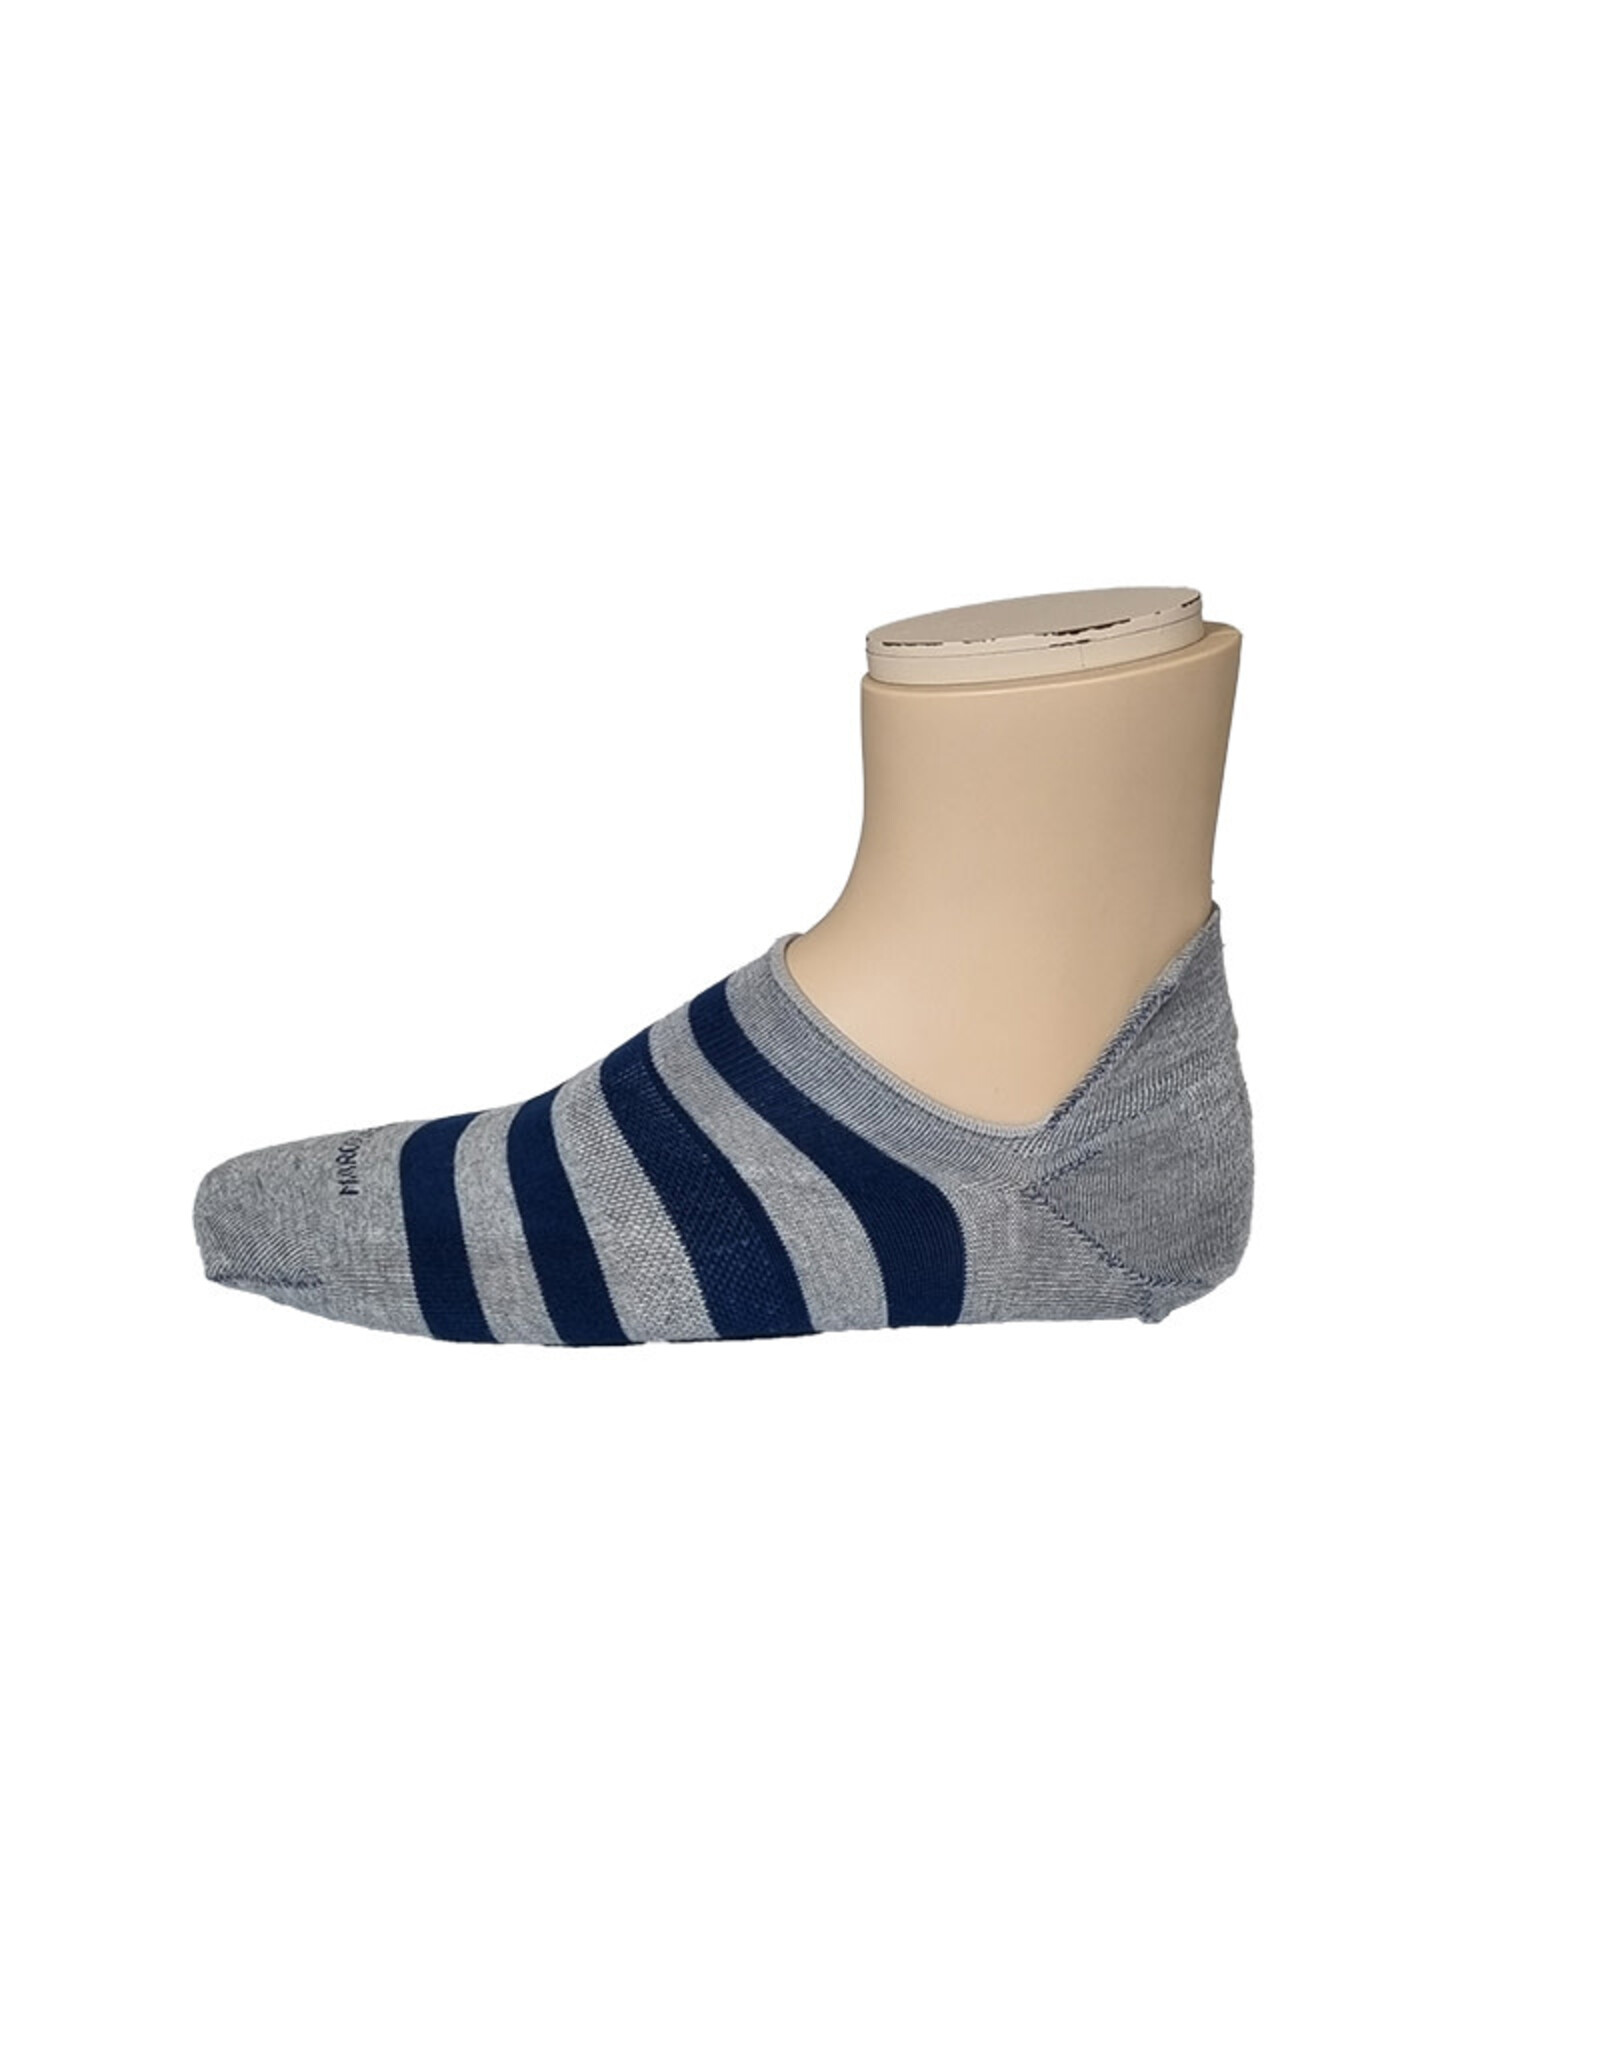 Marcoliani Marcoliani socks grey-blue stripe sneaker 4641K/303